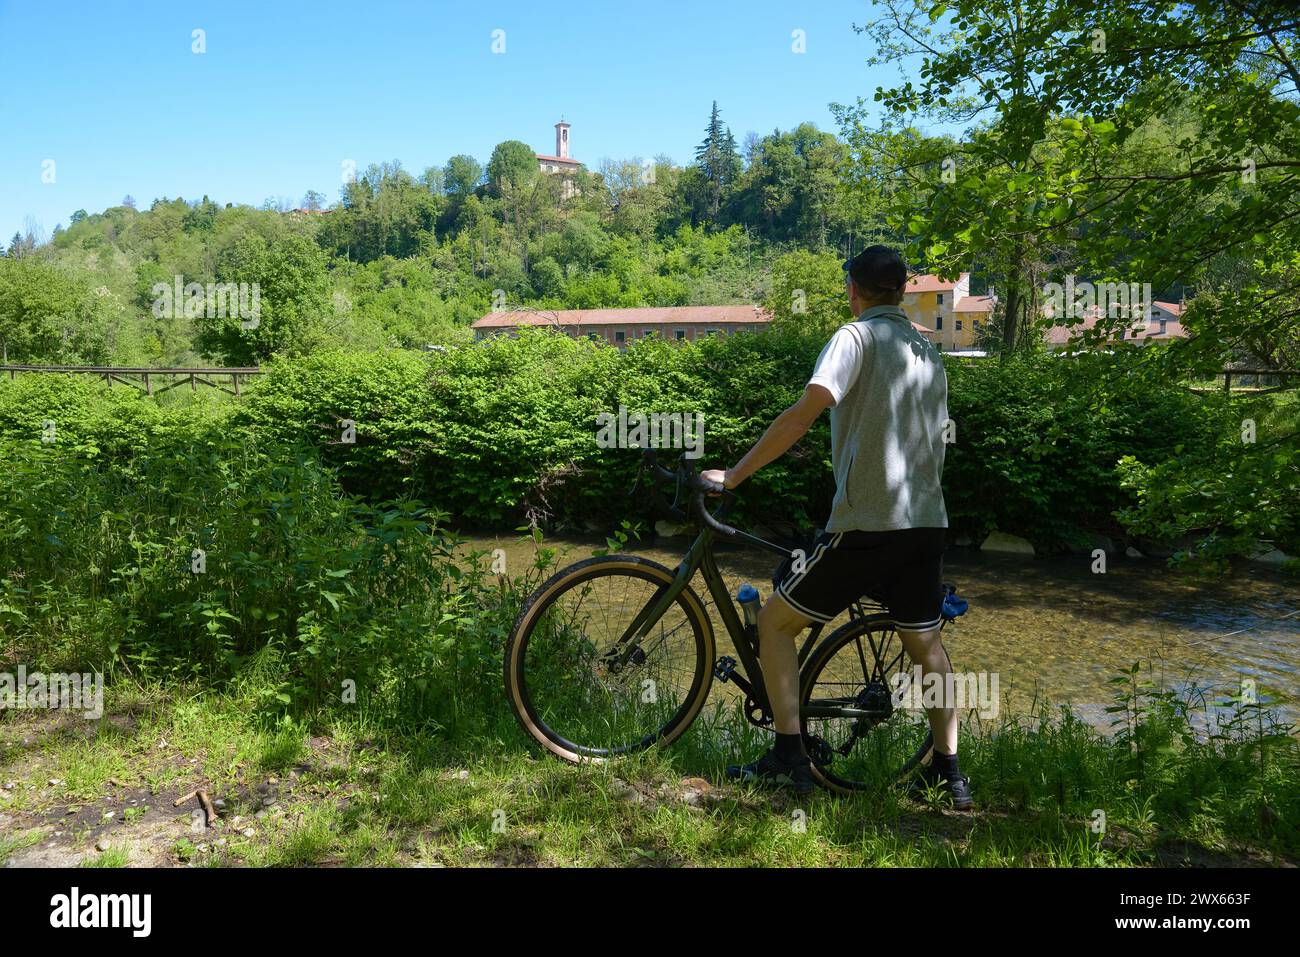 Balade à vélo dans la verdure le long du cours d'une rivière. Piste cyclable pédestre le long de la rivière Olona près de la ville de Lonate Ceppino, Italie Banque D'Images